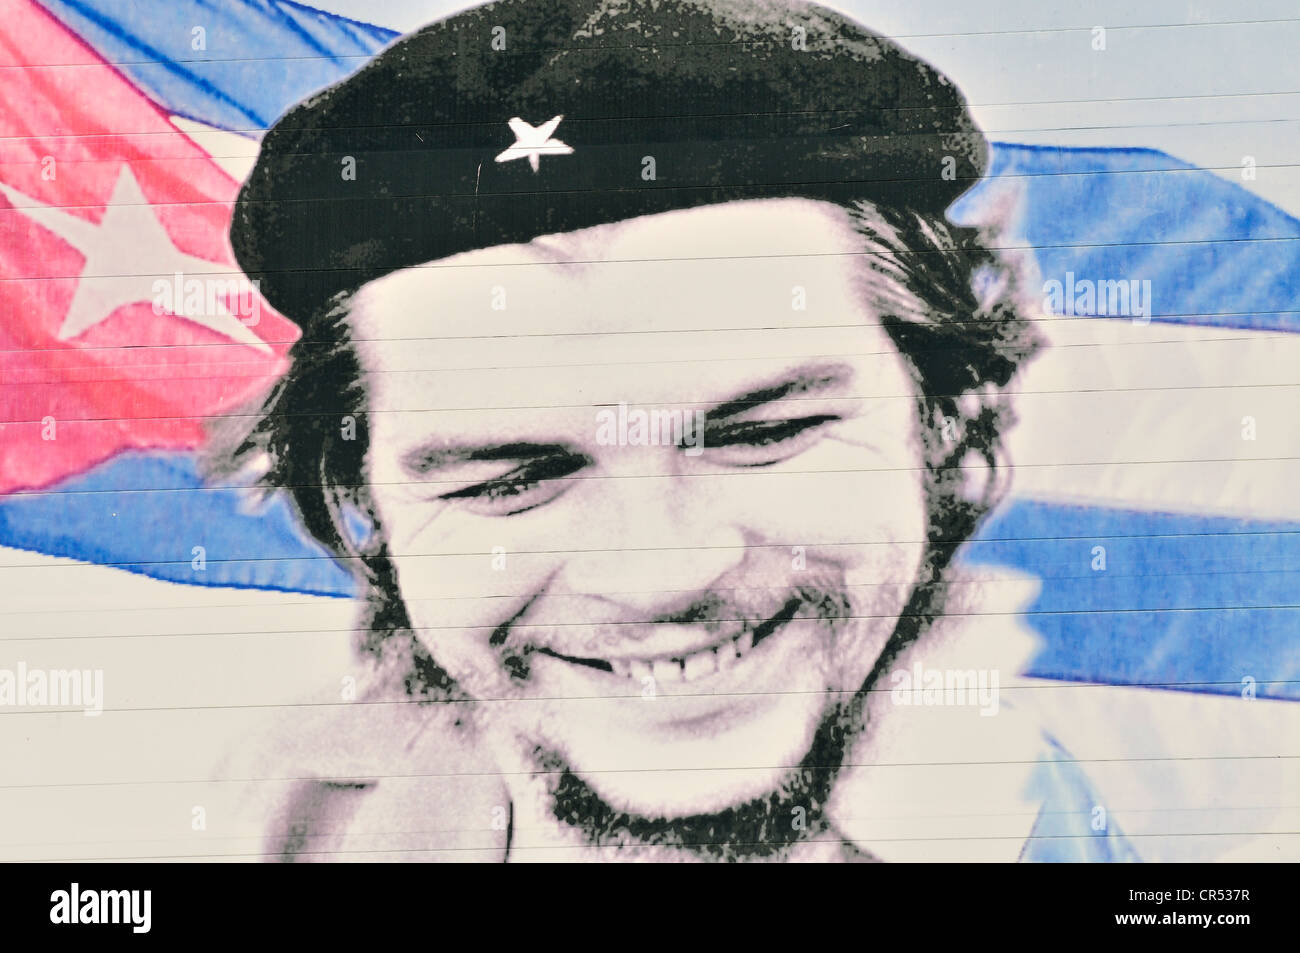 Image d'Ernesto 'Che' Guevara sur une façade de maison, la propagande révolutionnaire, Camagueey, de Cuba, des Caraïbes Banque D'Images